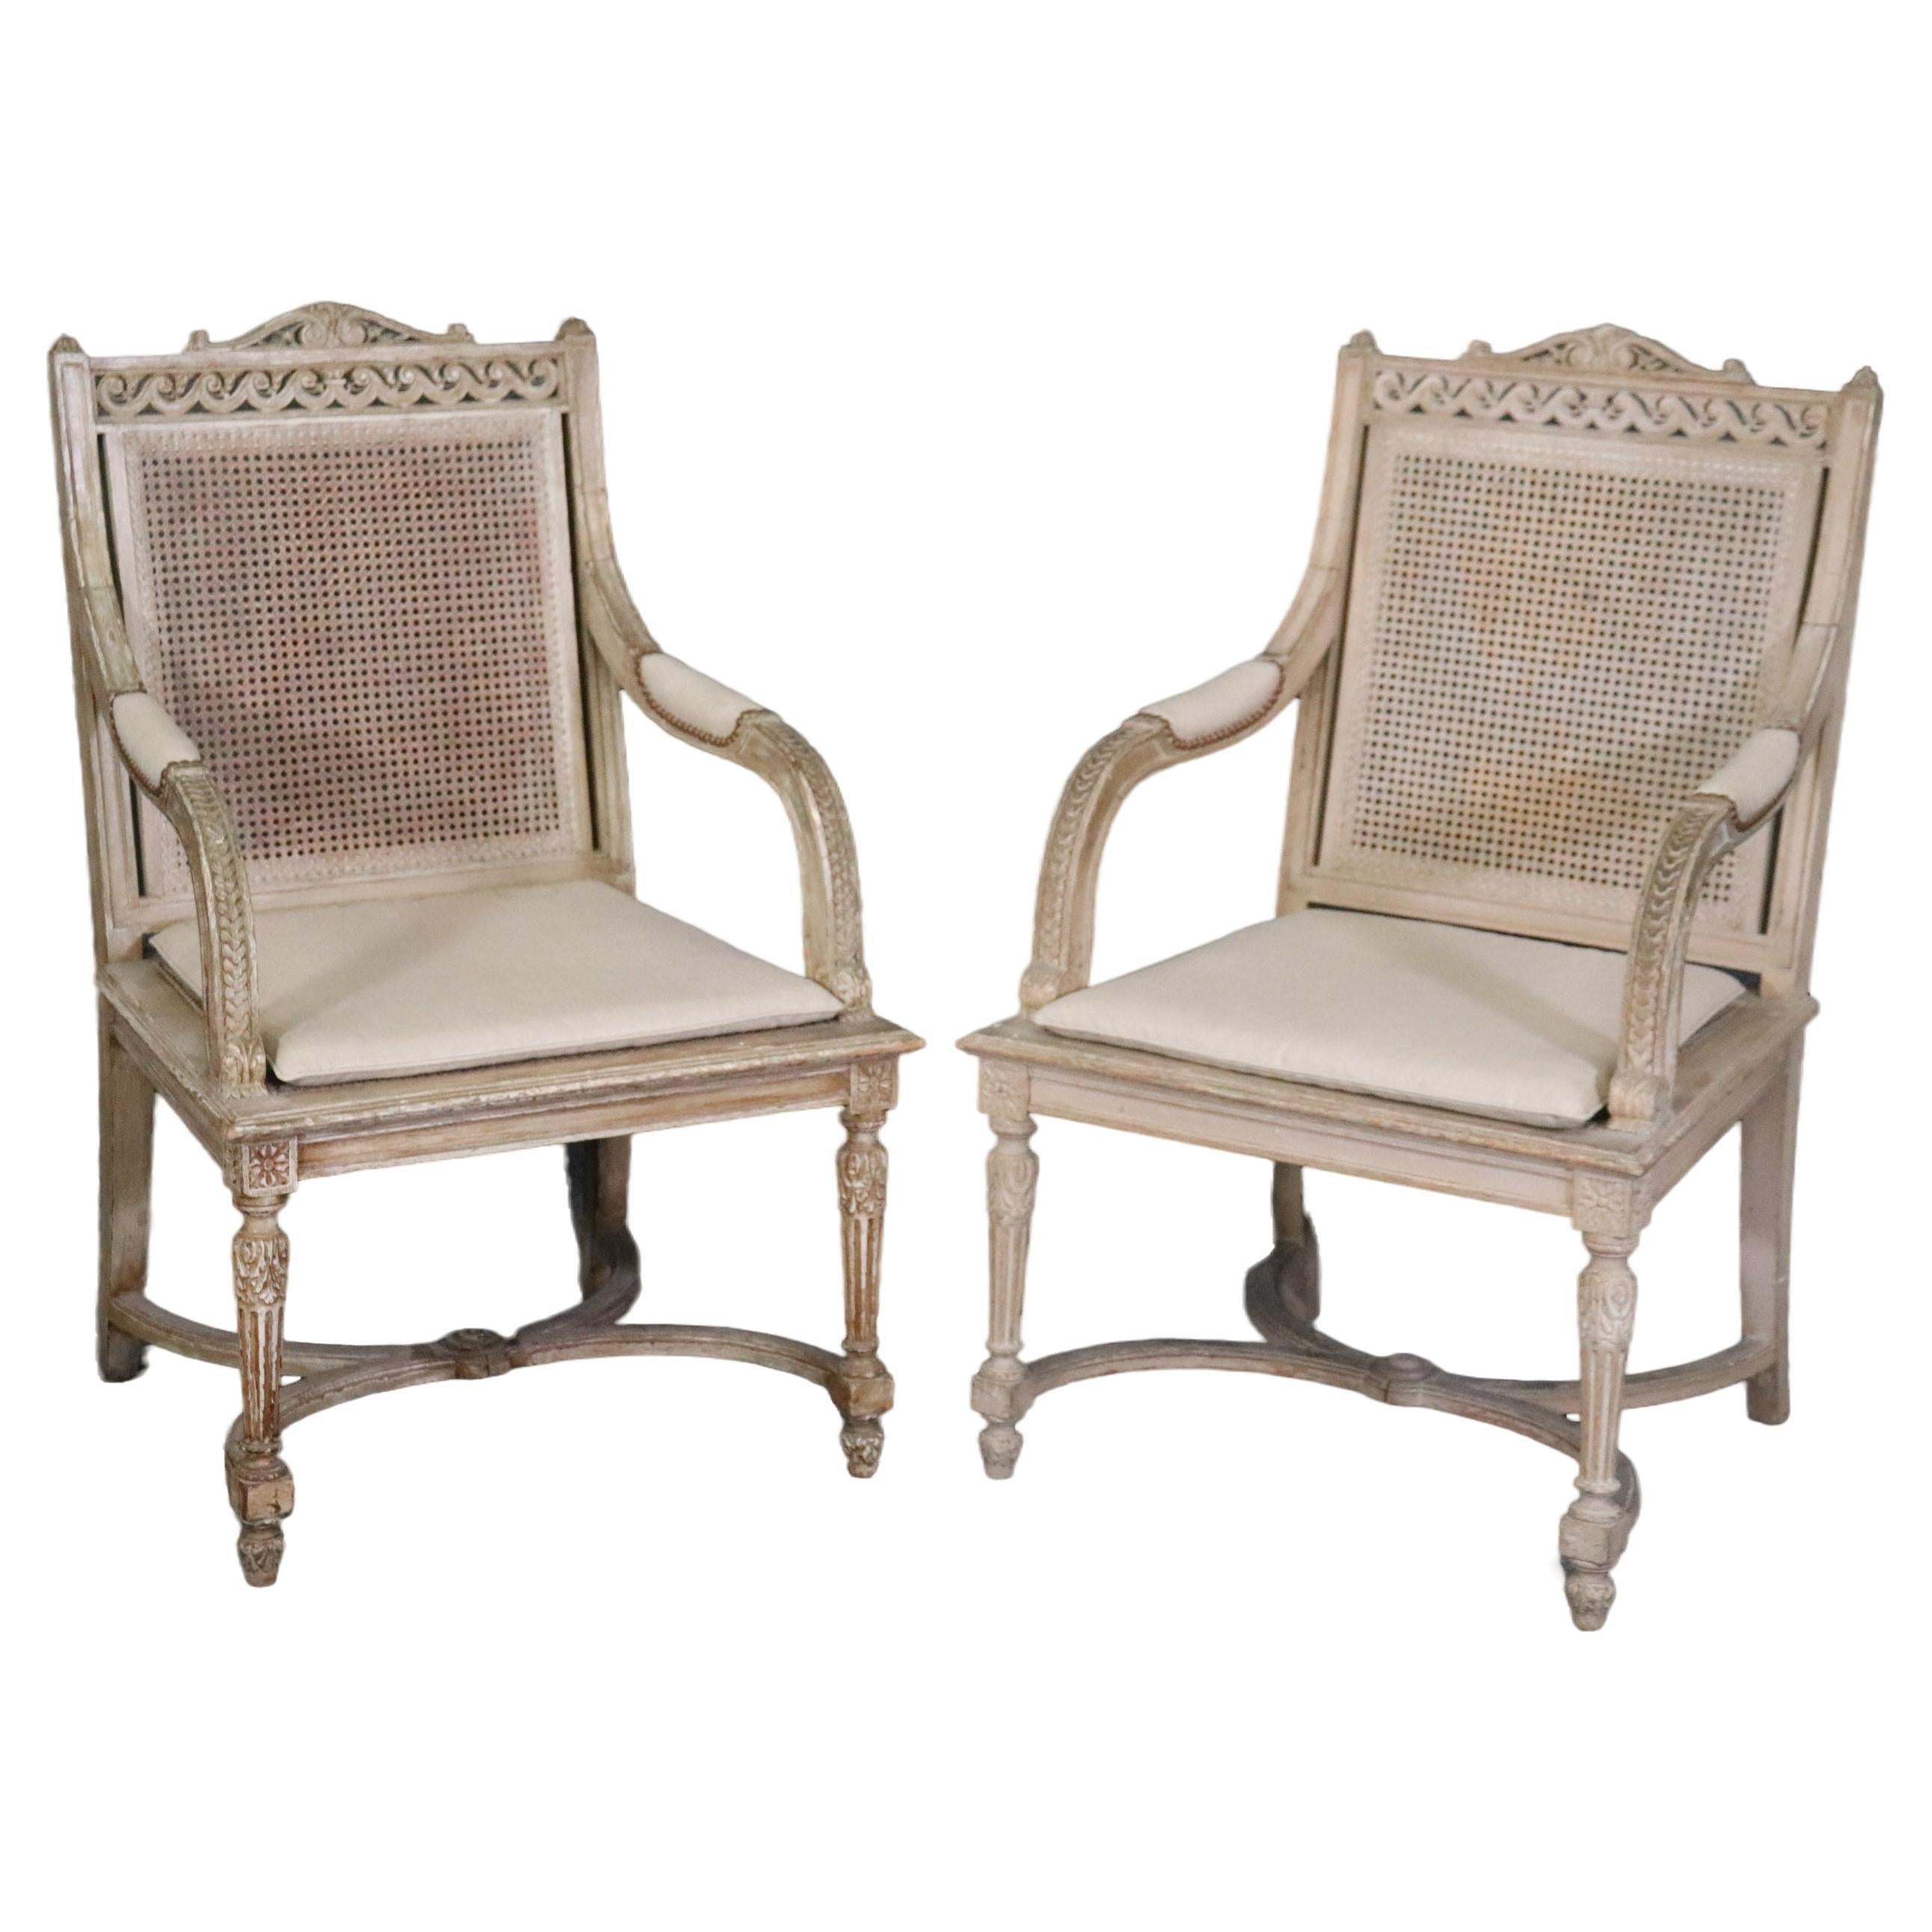   Paire de fauteuils de style Louis XVI à dossier canné peint en blanc antique